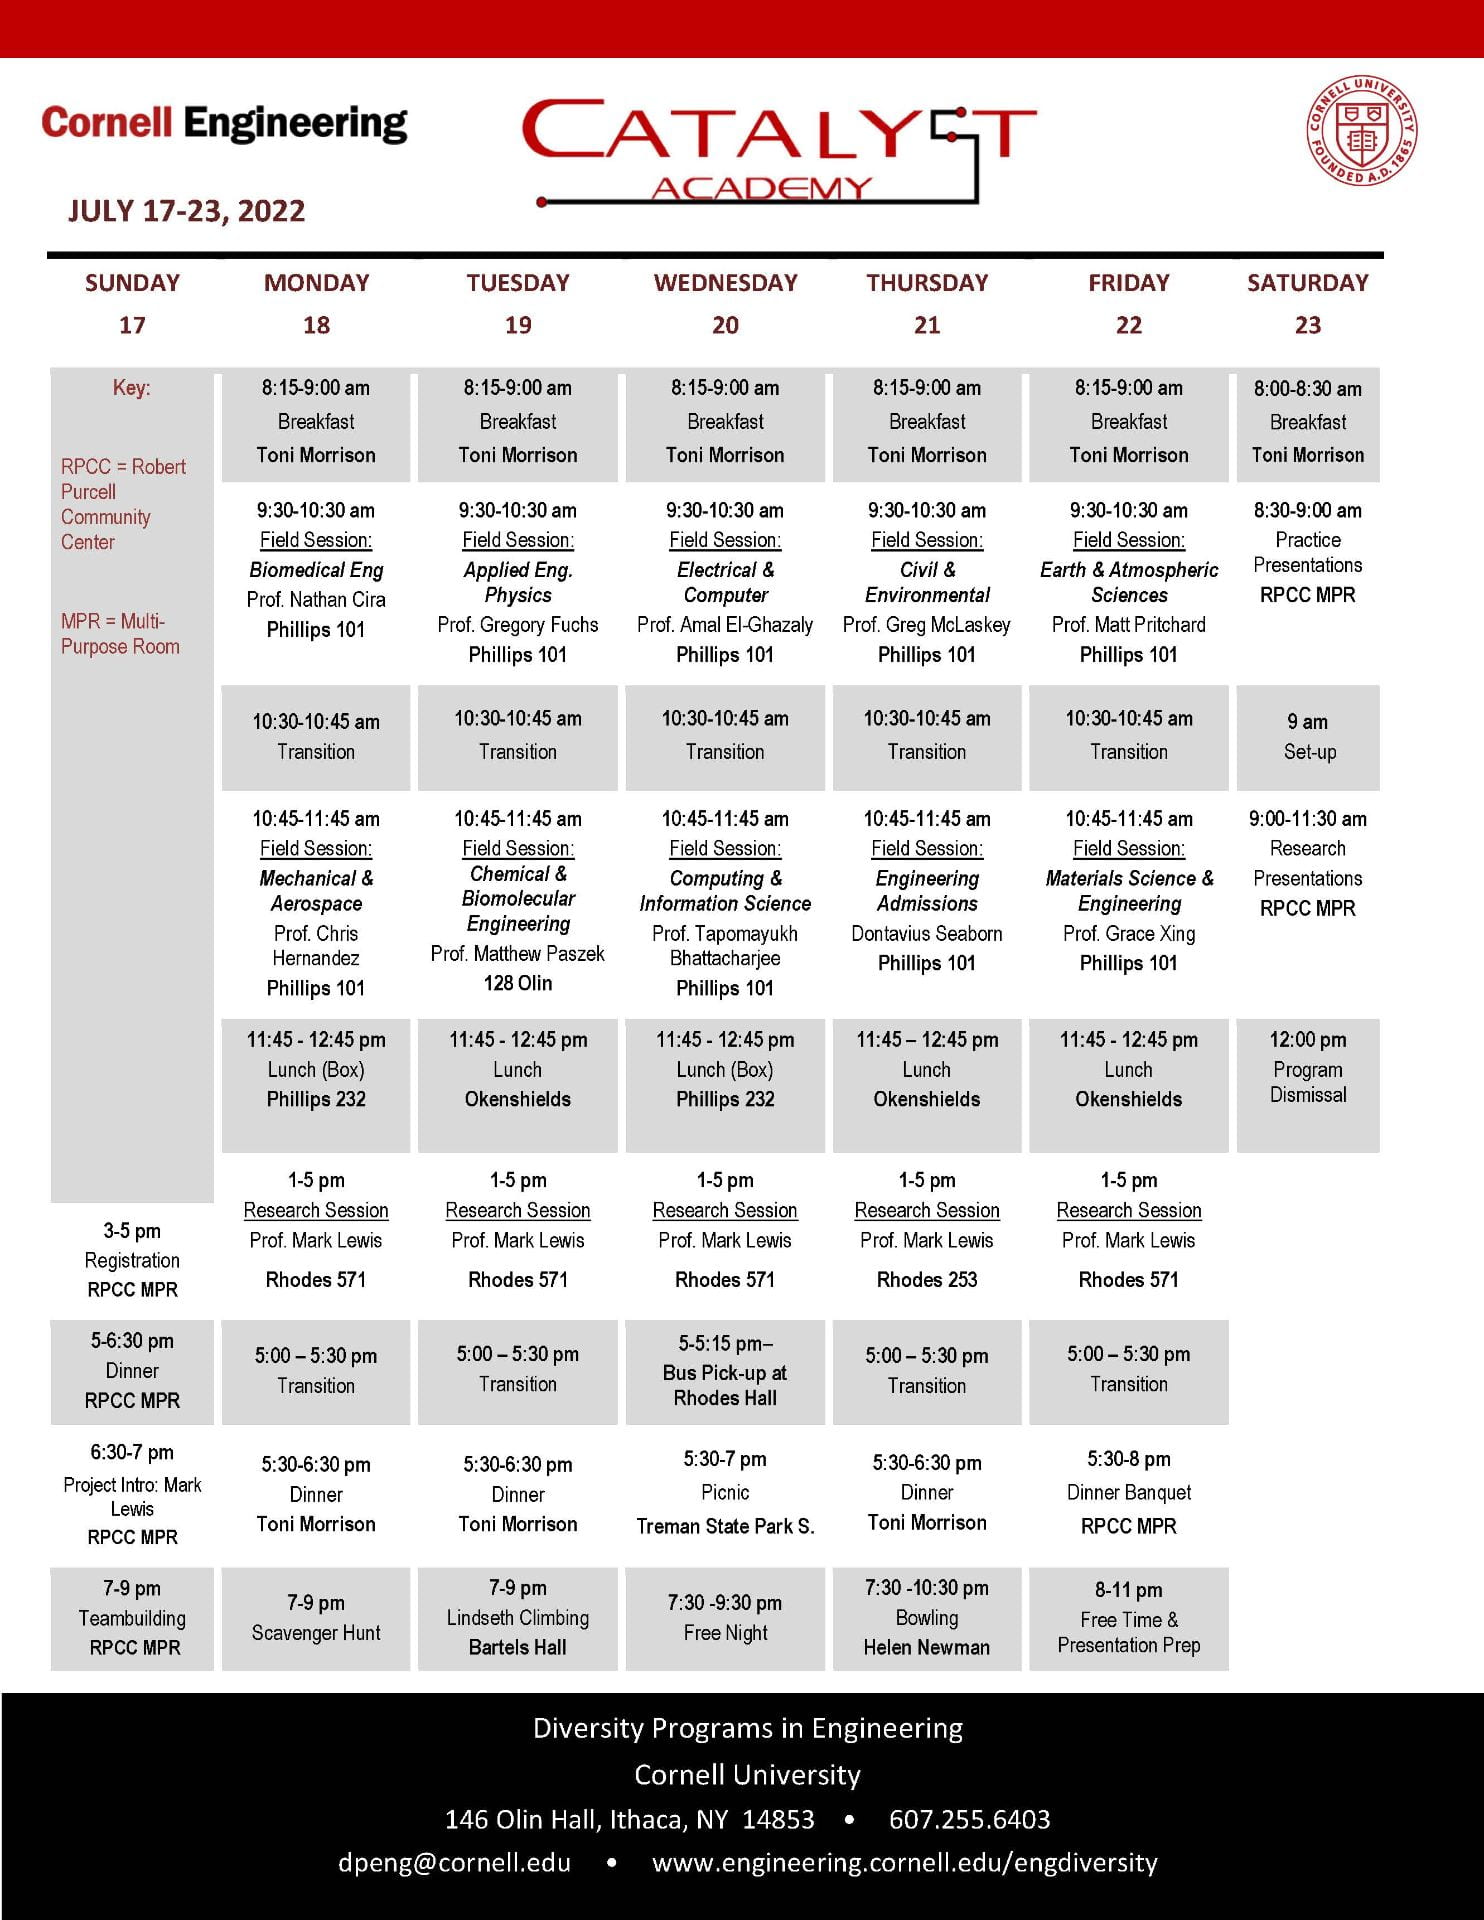 Image of CATALYST Academy 2022 Schedule